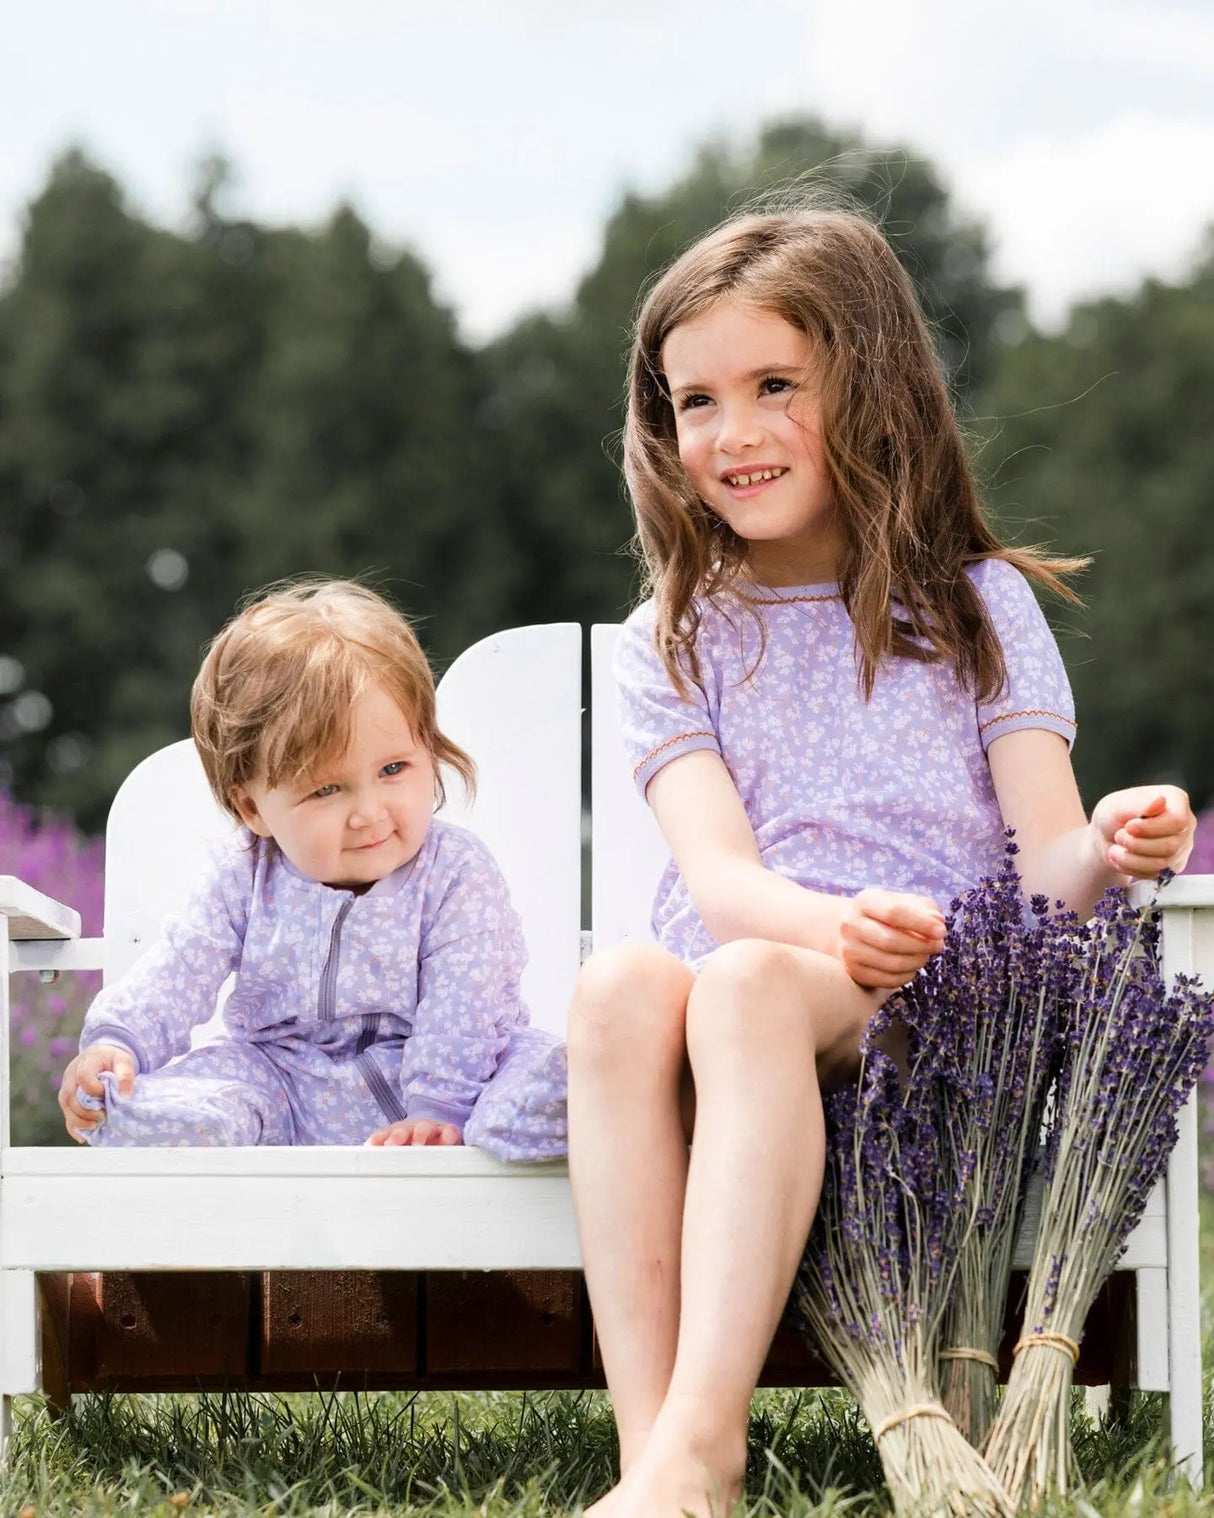 Organic Cotton One Piece Pajama Lilac Printed Little Flowers | Deux par Deux | Jenni Kidz